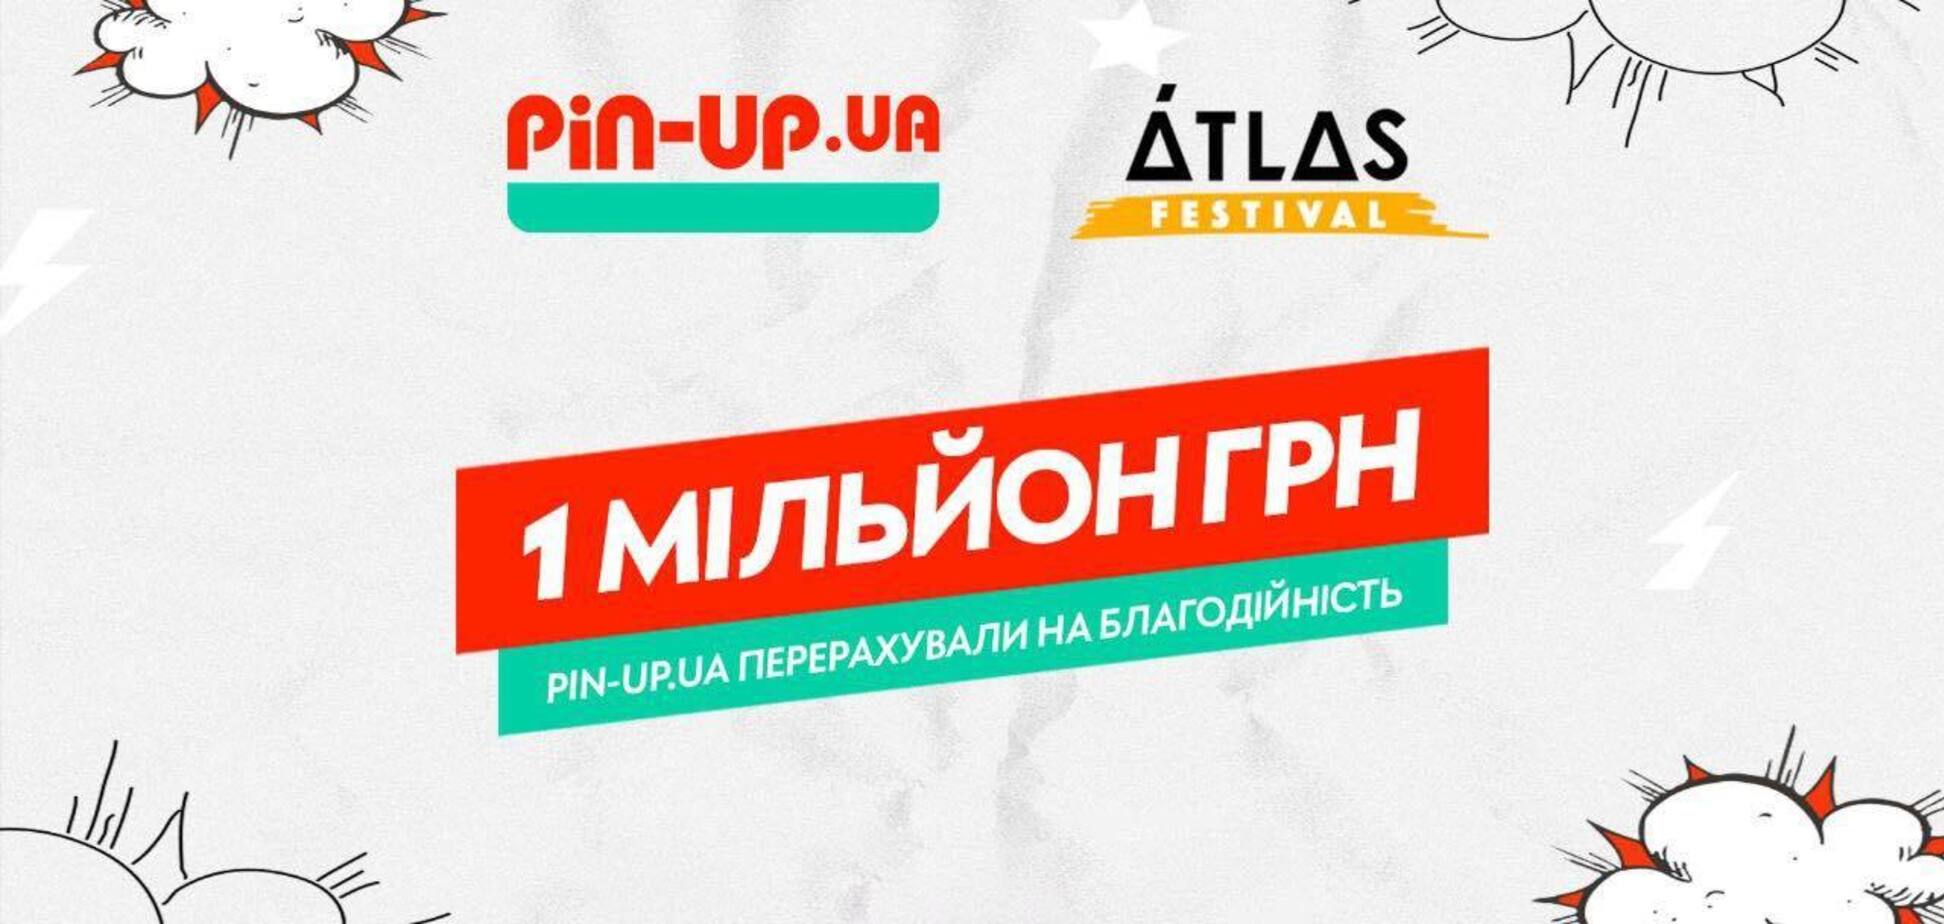 PIN-UP Ukraine перерахувала 1 млн грн на благодійну ініціативу фестивалю Atlas